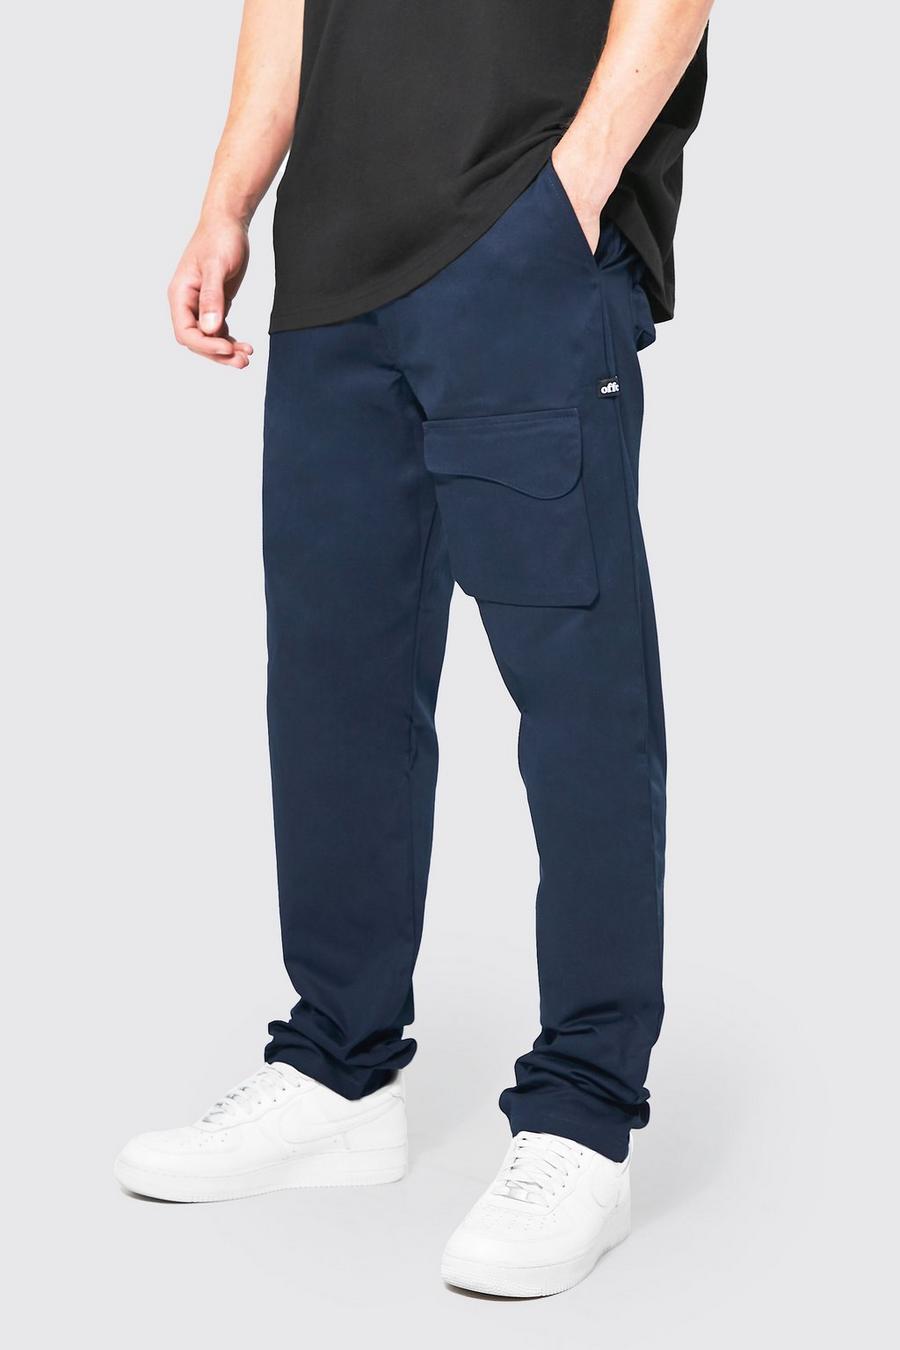 Pantaloni Tall rilassati con tasche curve, Navy blu oltremare